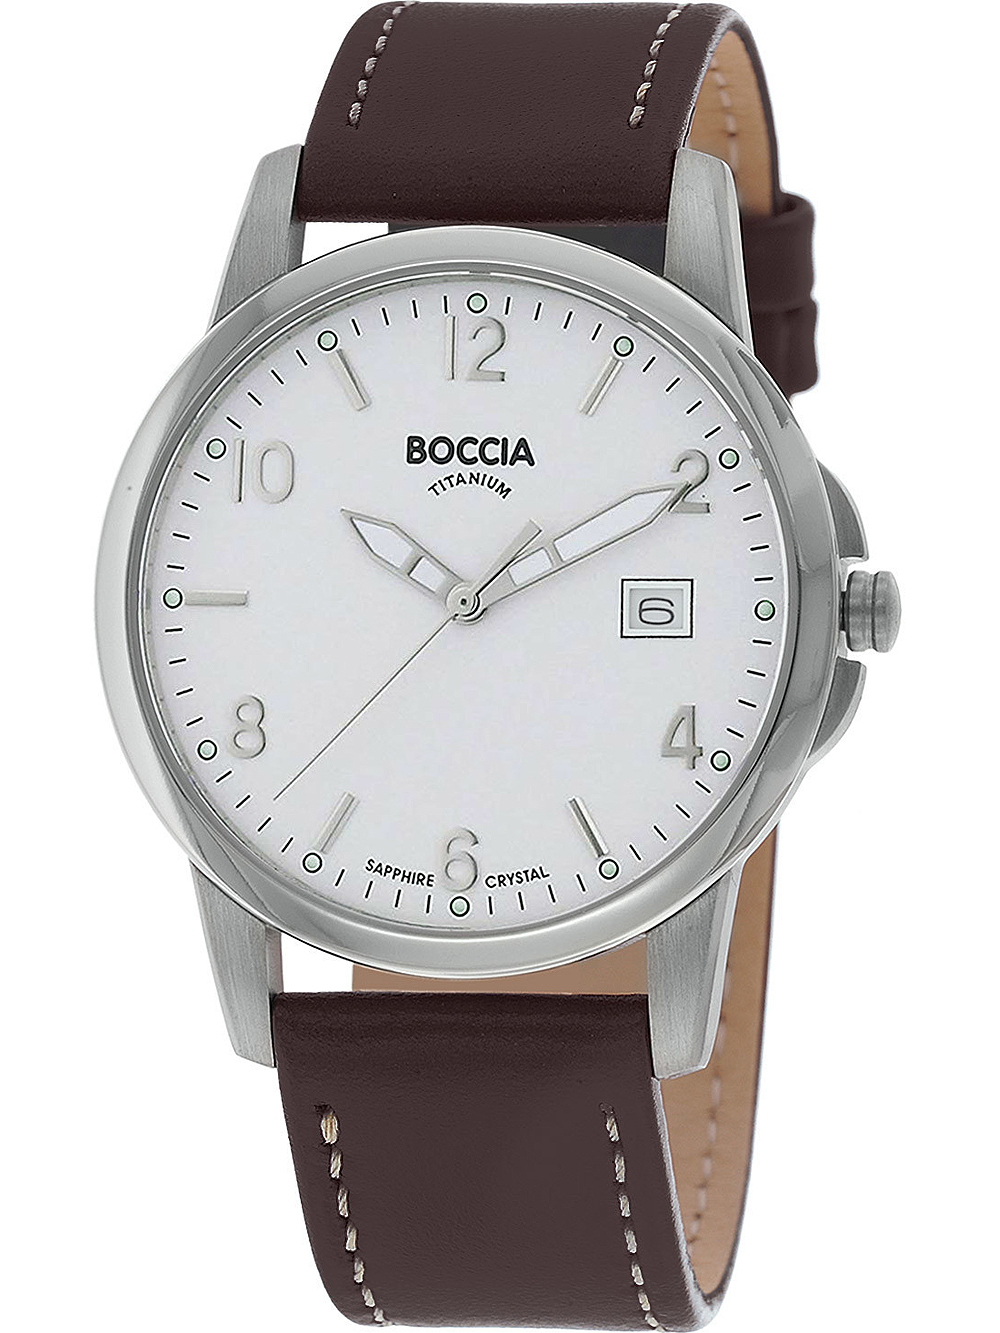 Dámské hodinky Boccia 3625-01 men`s watch titanium 36mm 5ATM